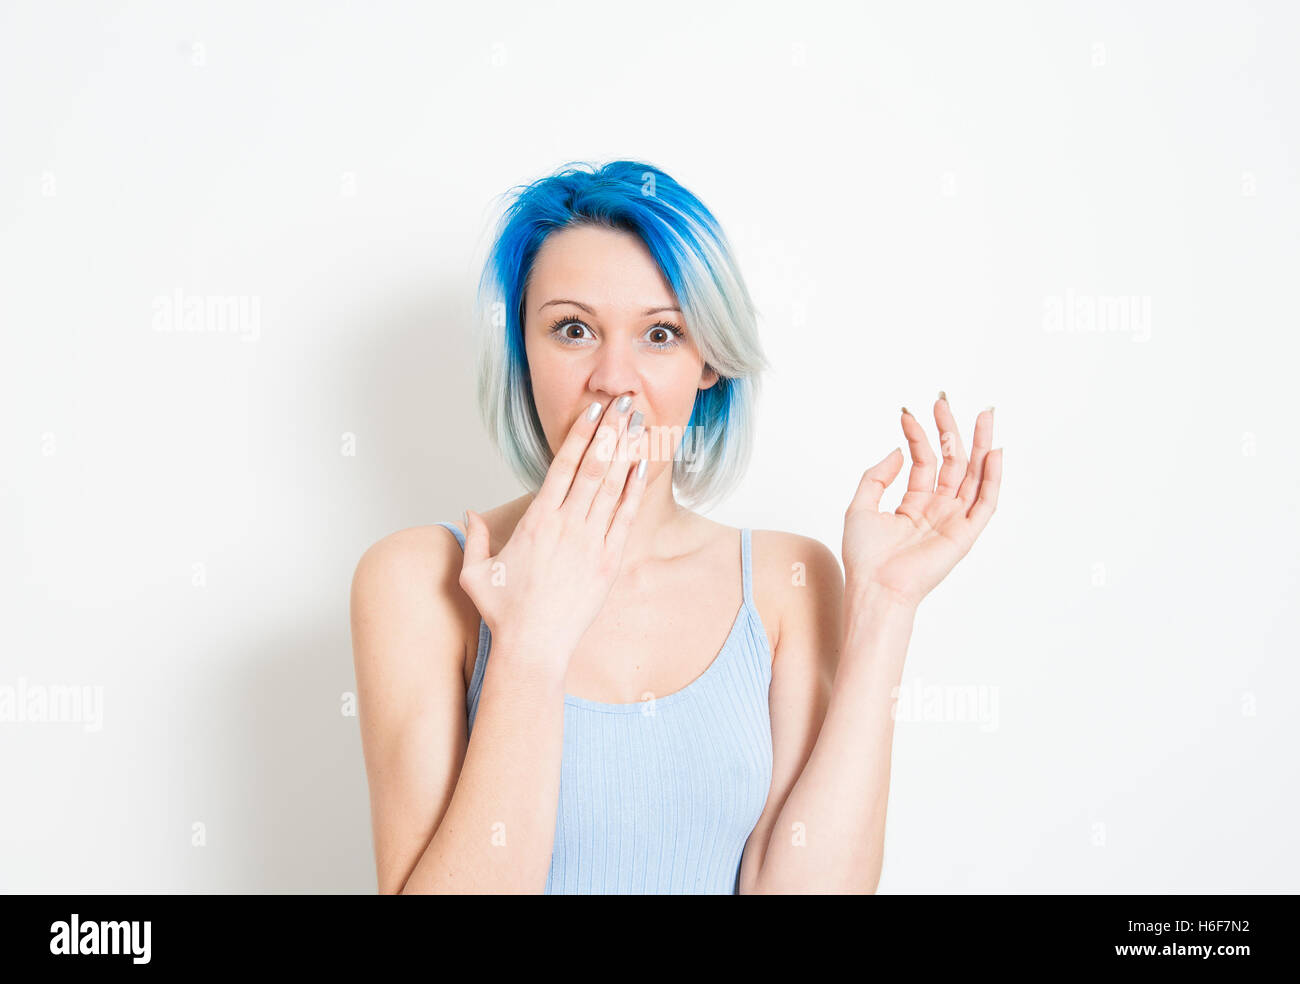 Junge schöne blaue Haare alternative Hipster Frau betäubt Ausdruck Blick in die Kamera mit der Hand den Mund auf weiße Rückseite Stockfoto